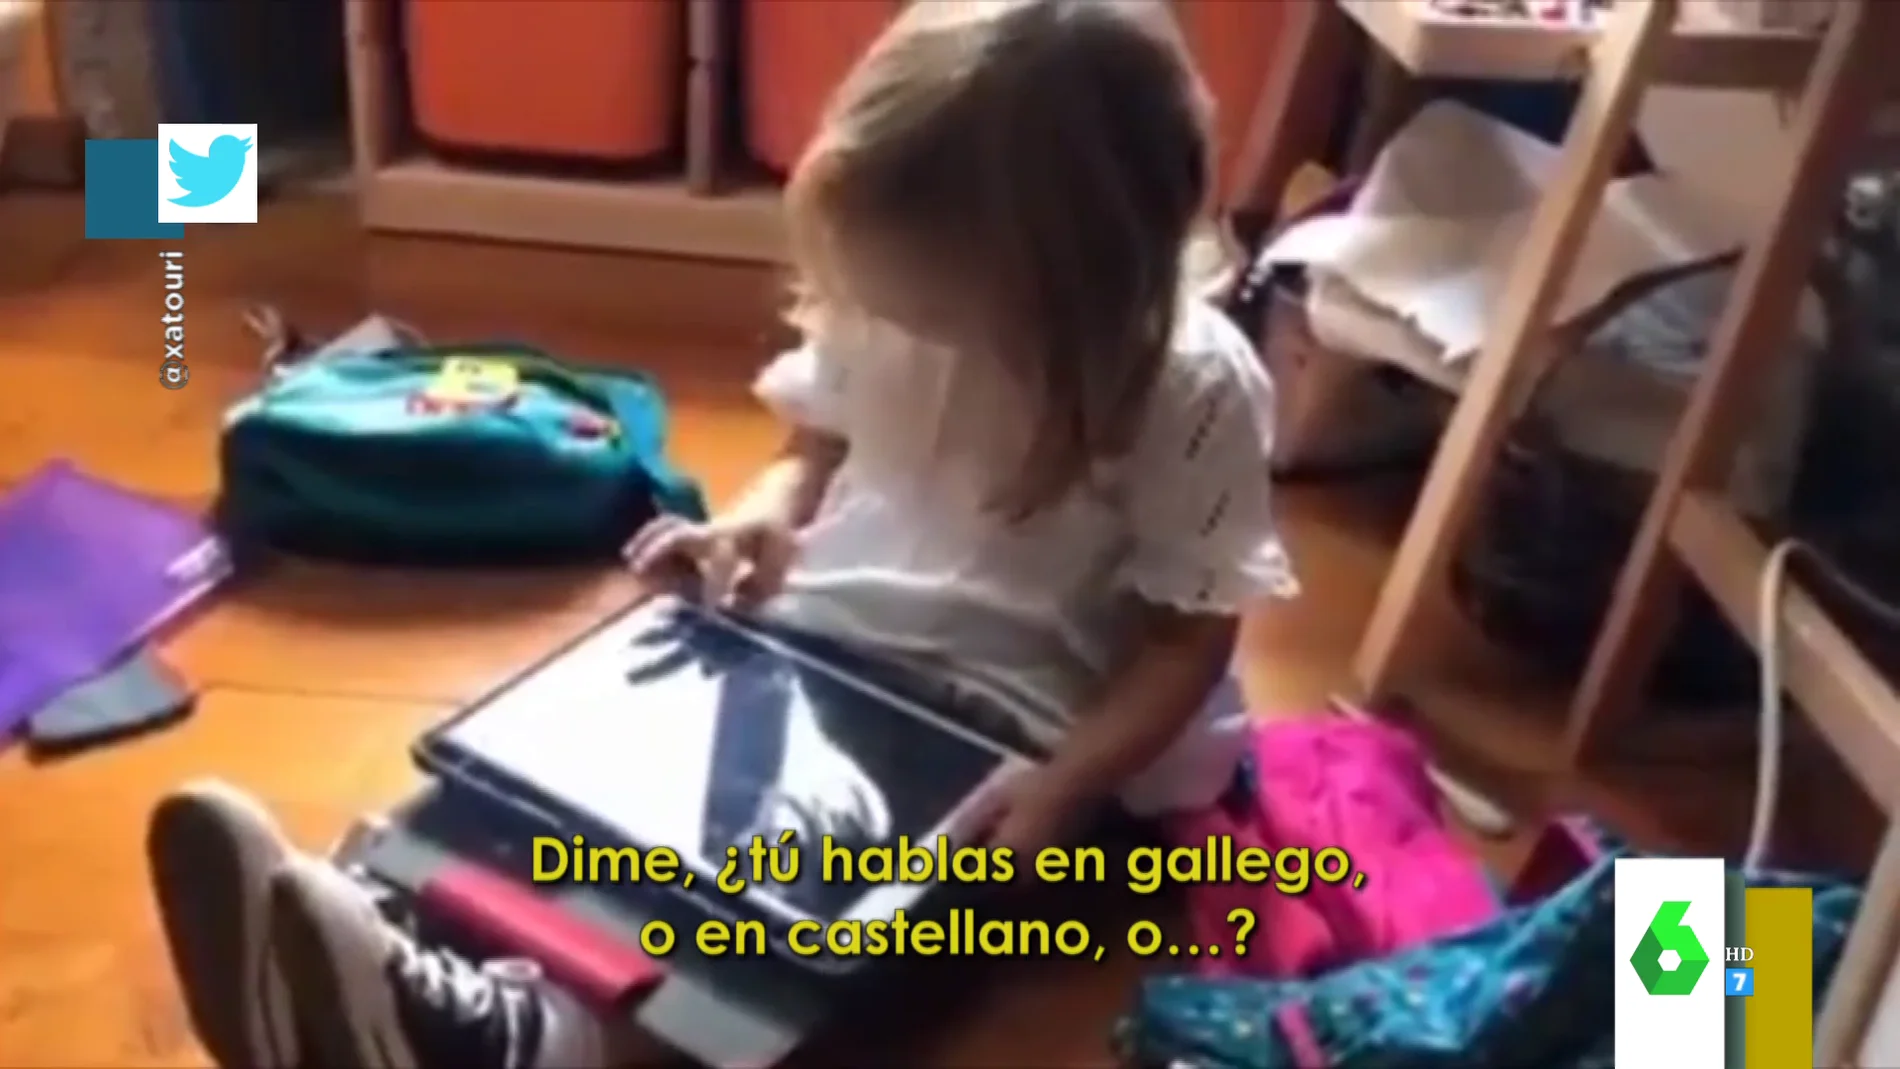 La respuesta de viral de una niña a Siri cuando dice que no la entiende: "Es que yo hablo en gallego, ¿sabes?"